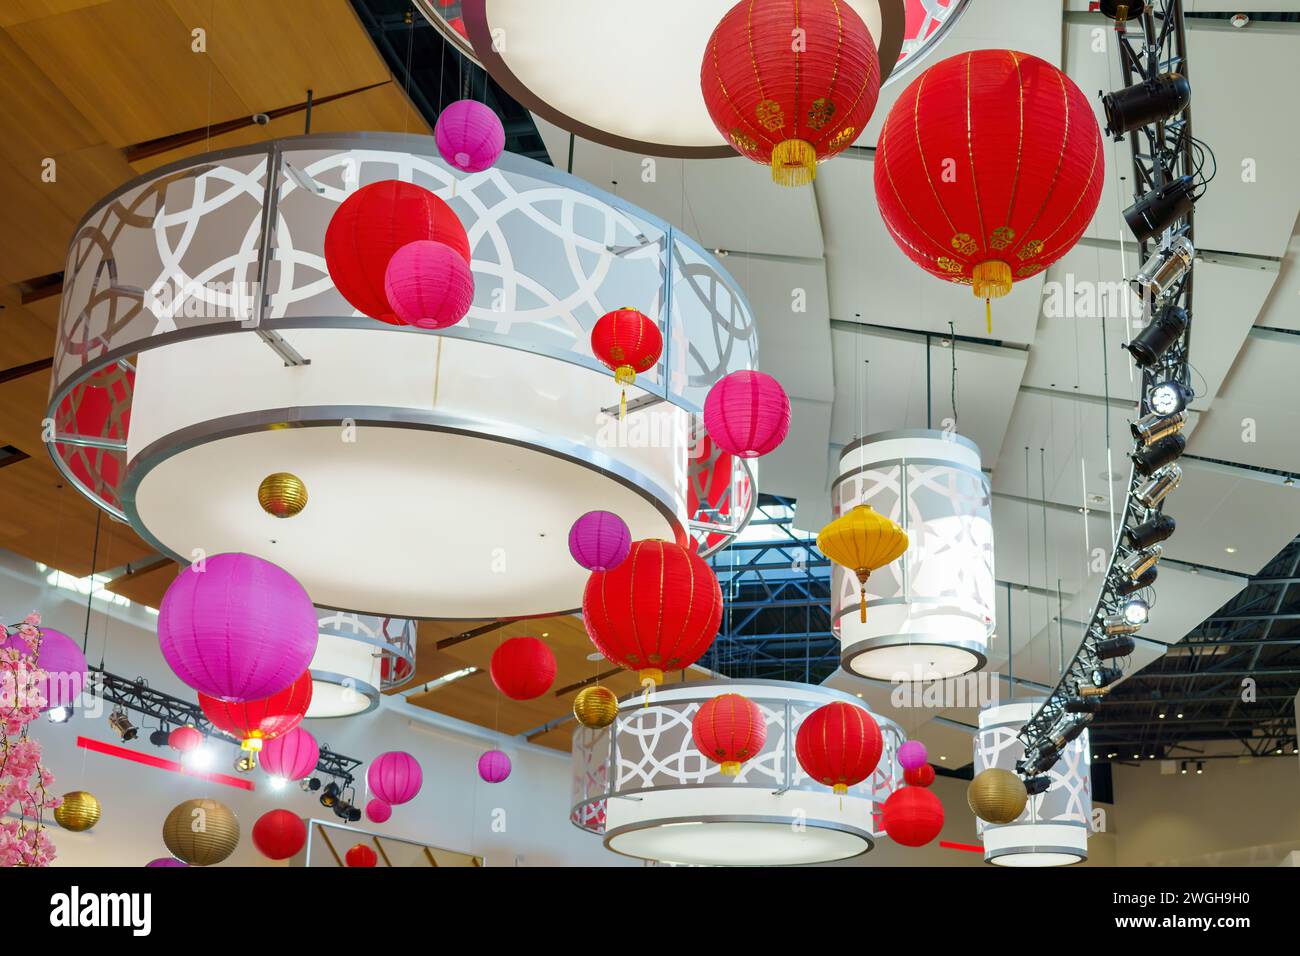 Decorazioni in stile cinese per celebrare l'anno del Drago. Gli ornamenti sono appesi al soffitto nel centro commerciale Vaughan Mills. Foto Stock